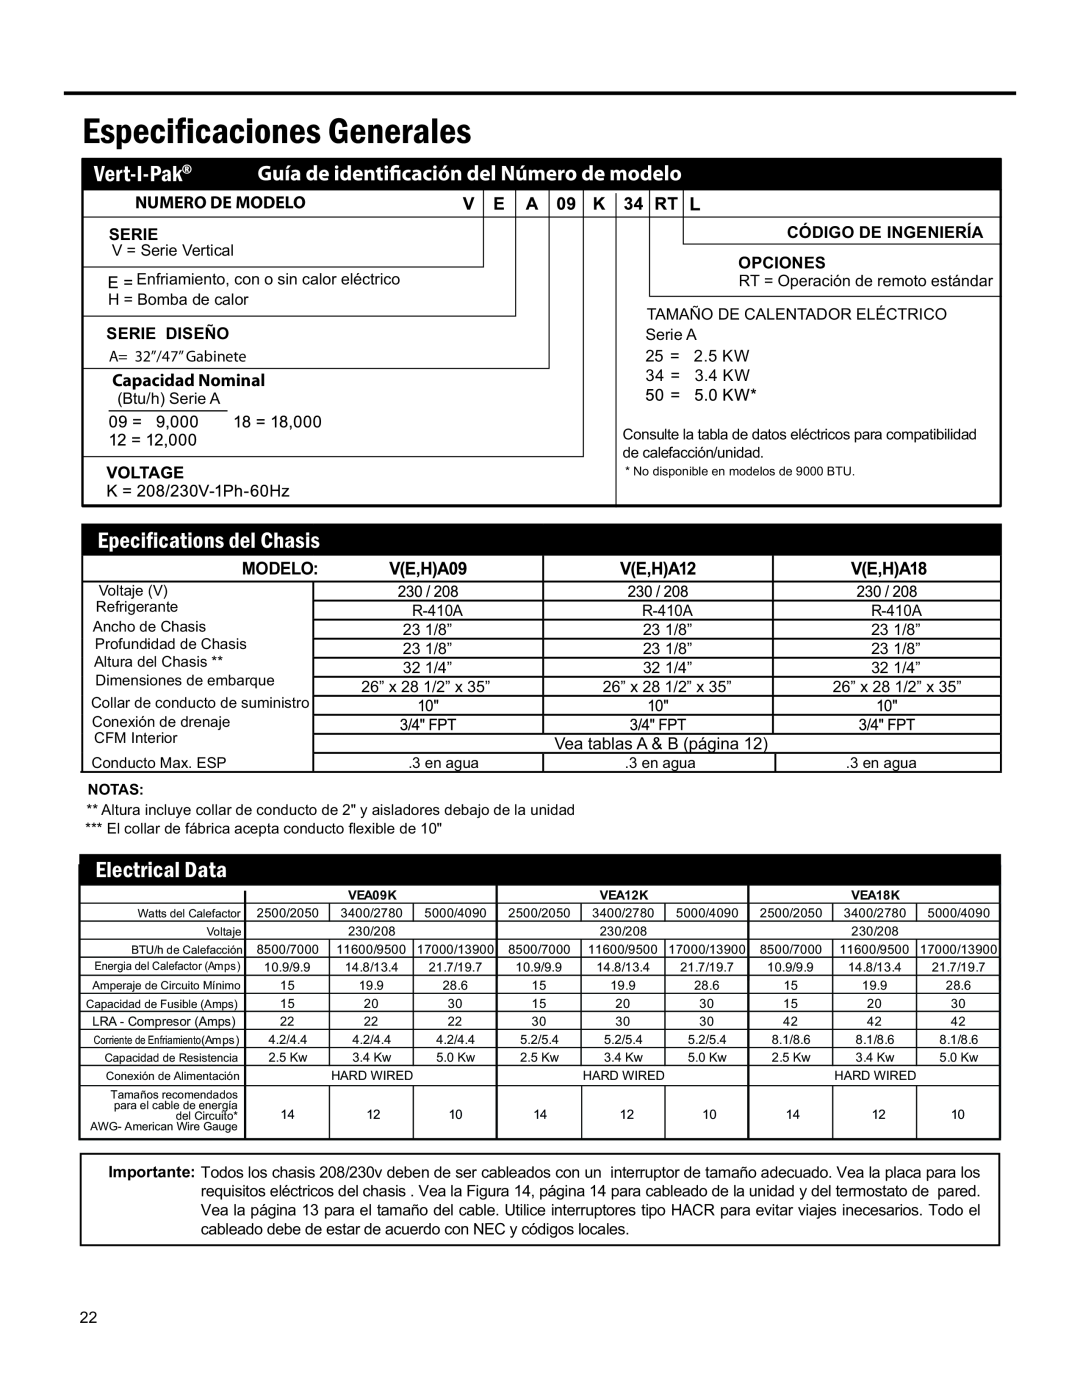 Friedrich 920-075-13 (1-11) Especificaciones Generales, Vert-I-Pak, Numero De Modelo, Capacidad Nominal, Electrical Data 